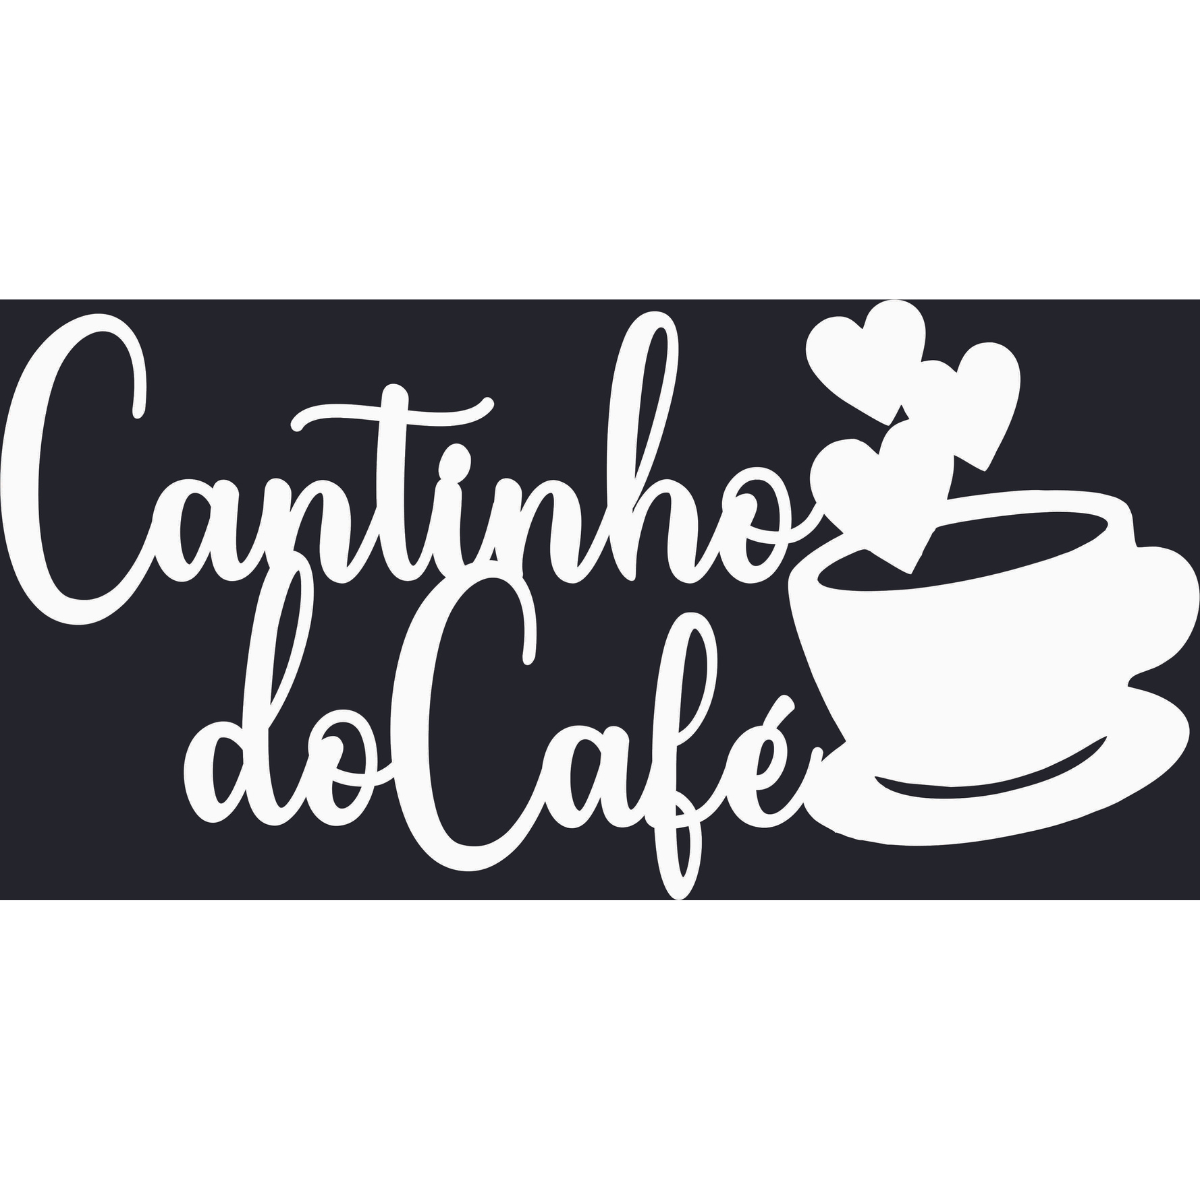 Cantinho do Cafe - Xícara - Decorativo - MDF - Branco - Escrita Placa Aplique - 15x30cm - 1